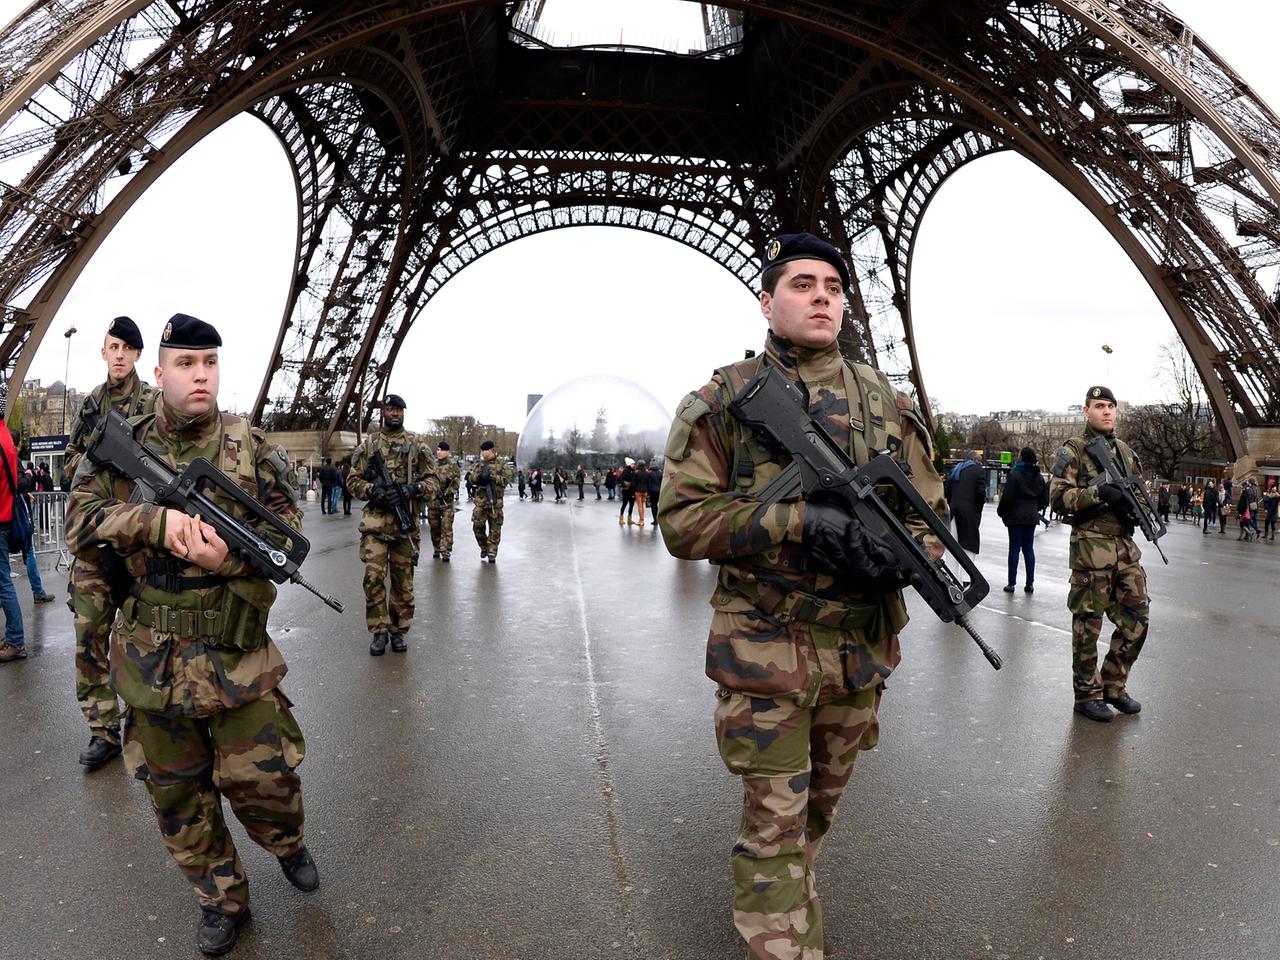 Französische Soldaten patrouillieren am 8.1.15 am Eiffelturm in Paris nach dem Attentat auf "Charlie Hebdo".